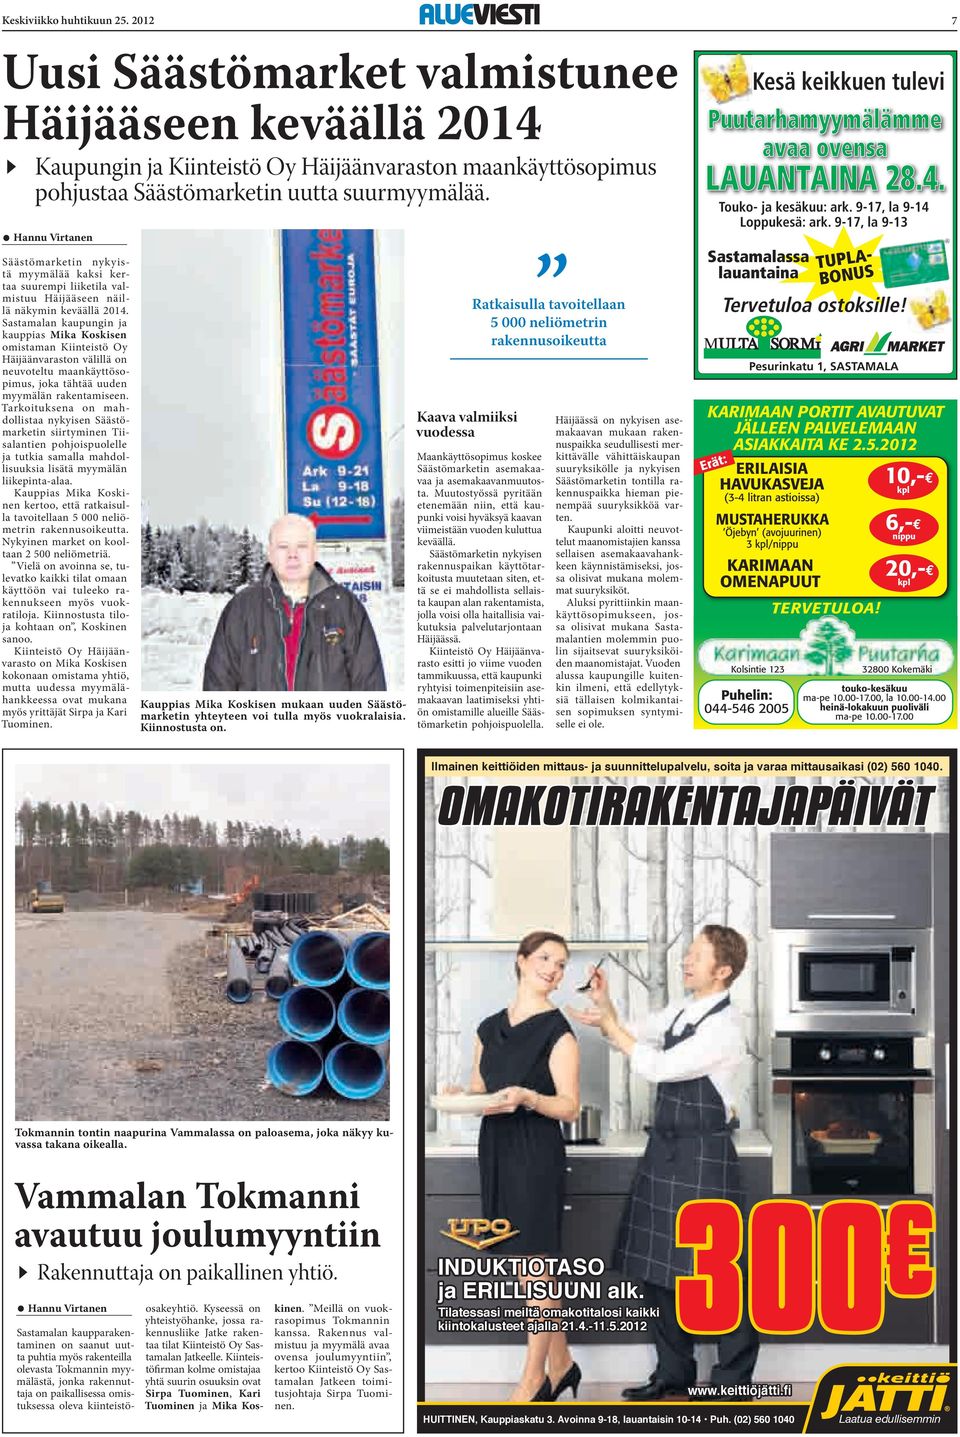 Sastamalan kaupungin ja kauppias Mika Koskisen omistaman Kiinteistö Oy Häijäänvaraston välillä on neuvoteltu maankäyttösopimus, joka tähtää uuden myymälän rakentamiseen.